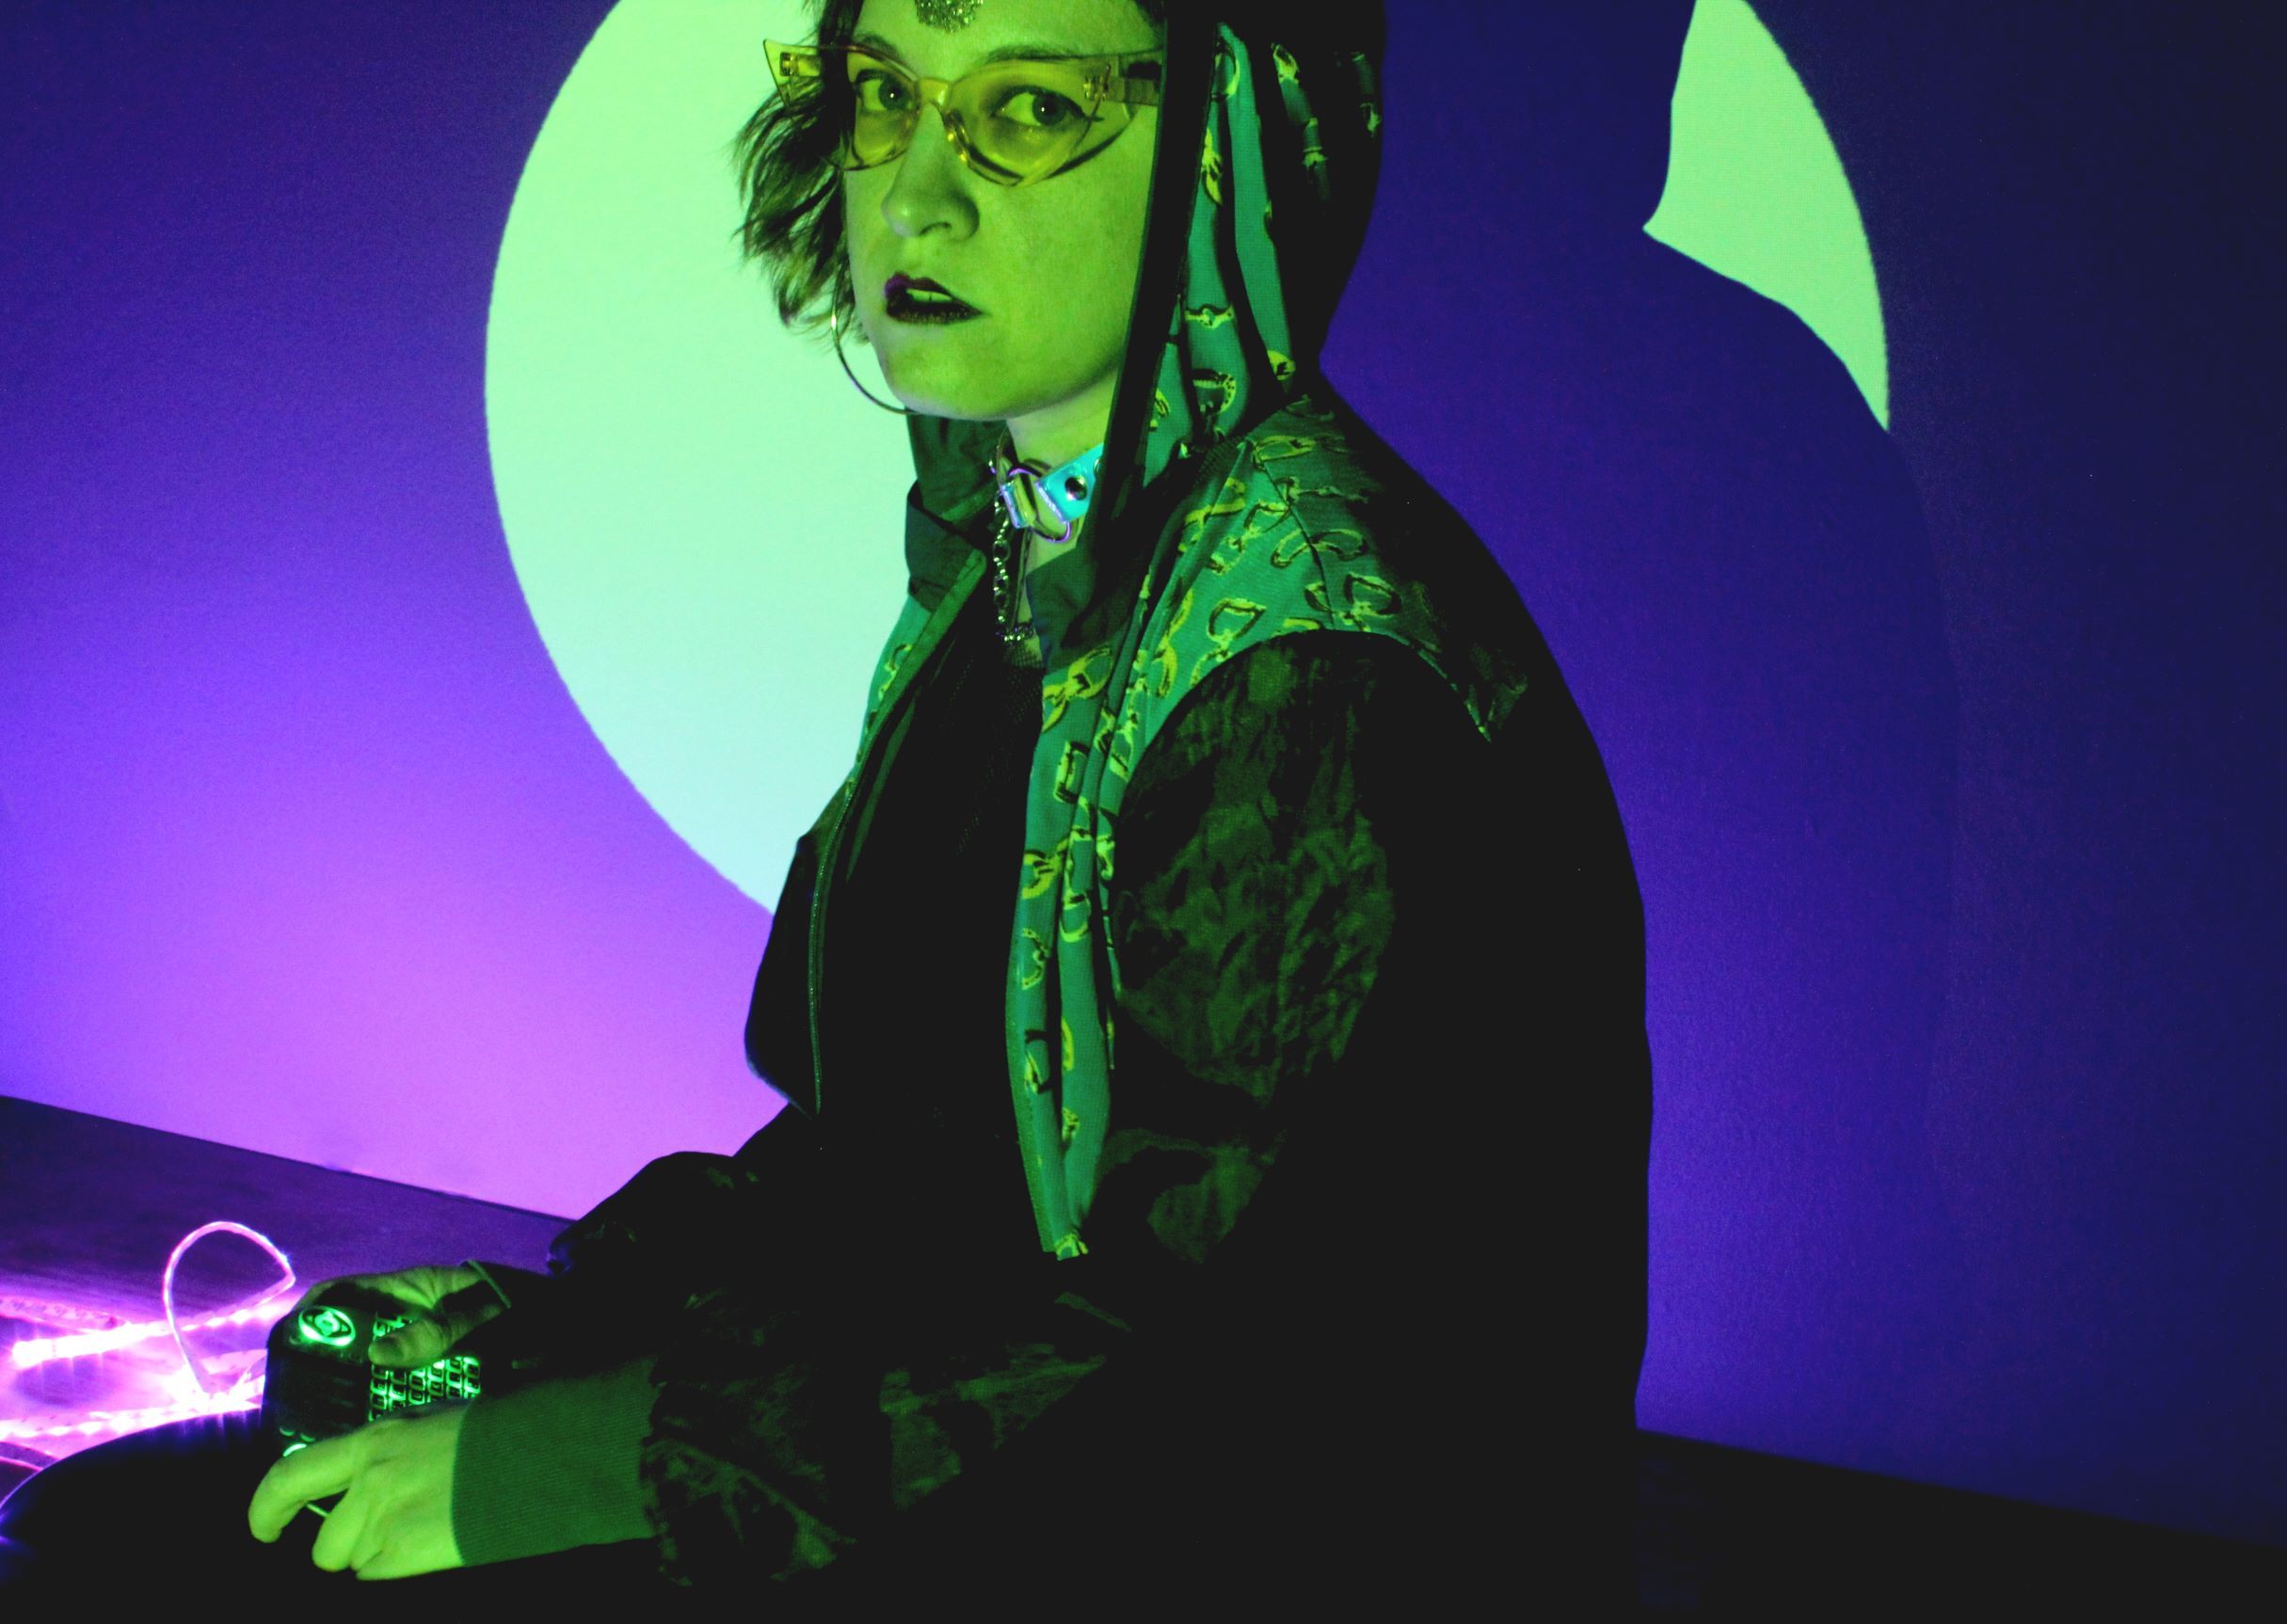 Der Oberkörper einer Person mit Brille und schulterlangen Haaren. Sie steht in einem grünen Lichtgekel und trägt einen Kapuzenpullover. Der Hintergrund ist lila blau beleuchtet.